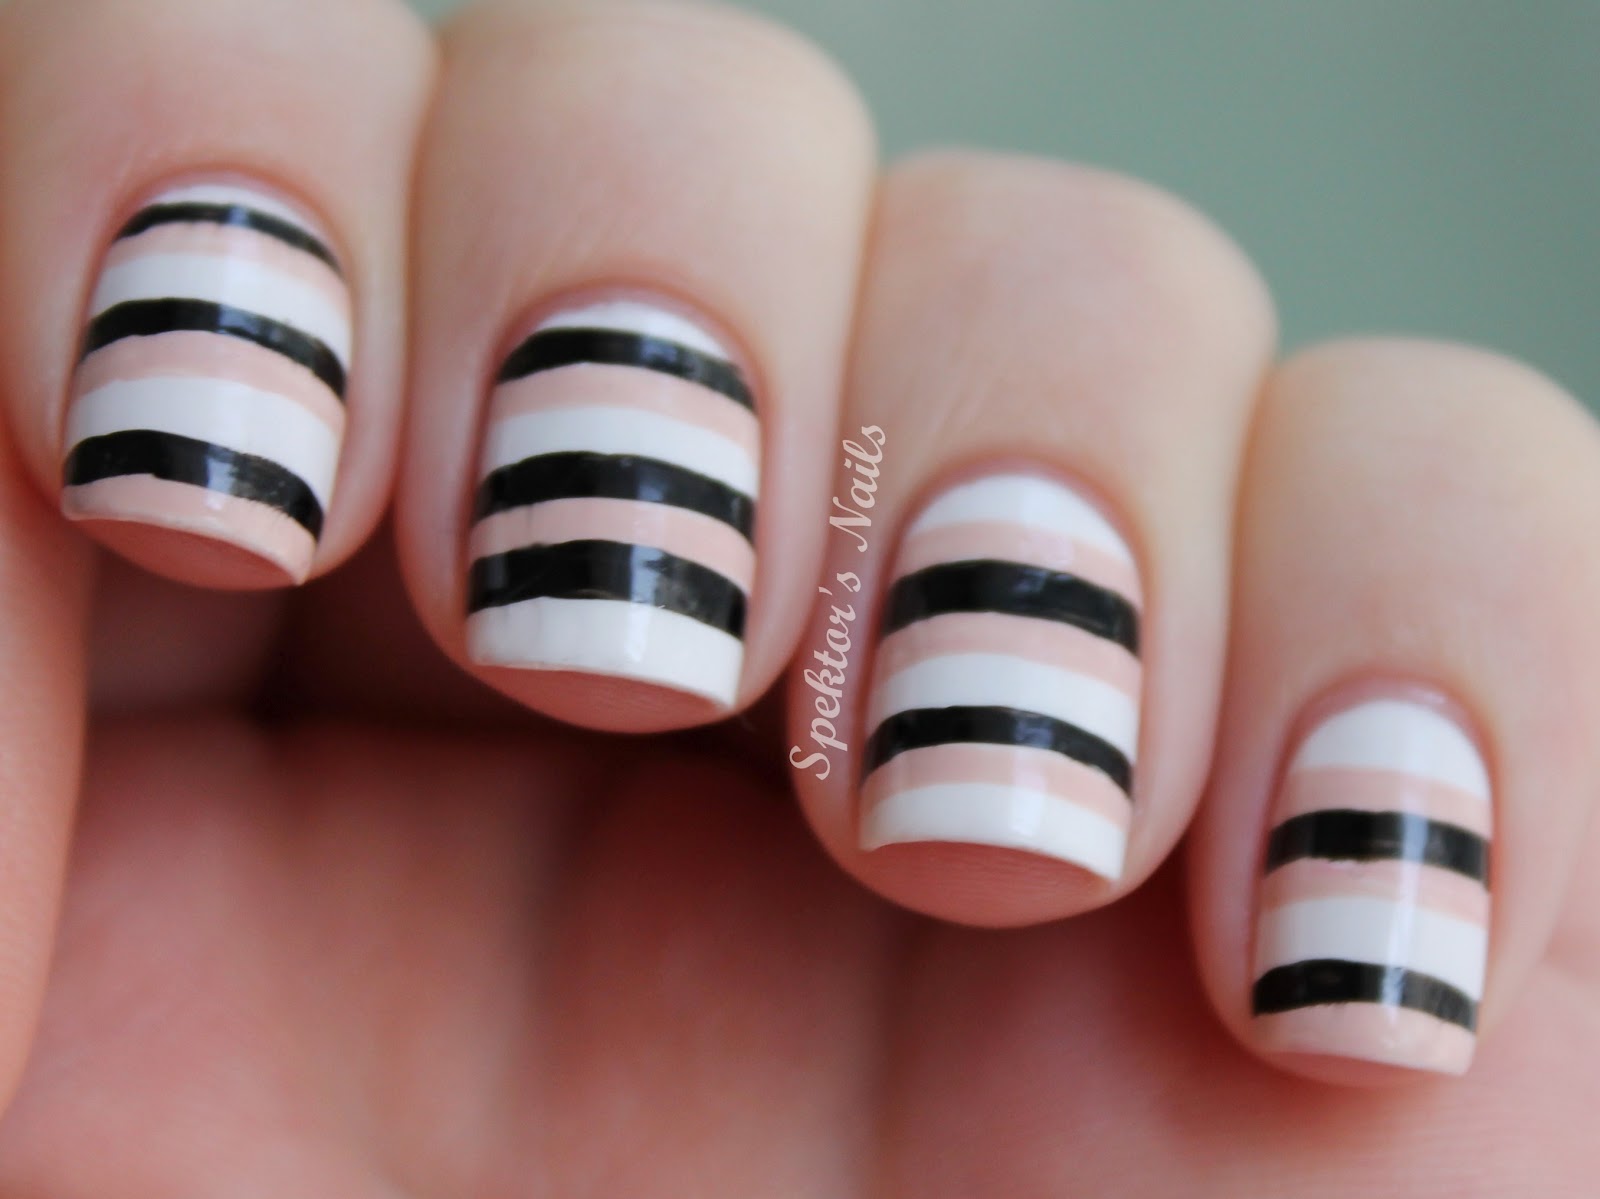 Black and White Stripes Nail Design